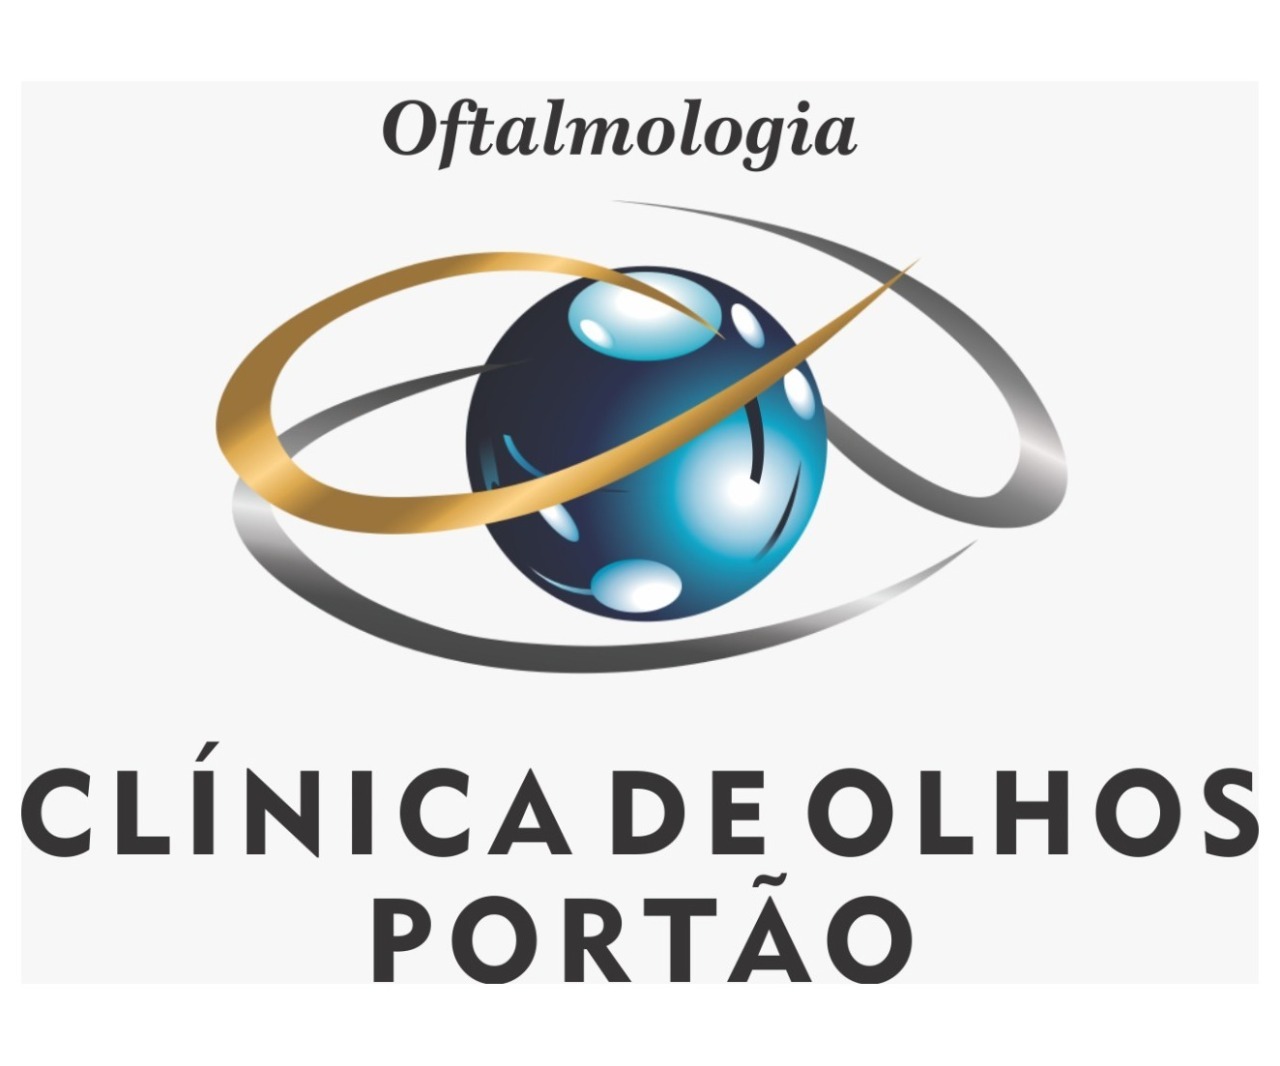 CLINICA DE OLHOS PORTÃO